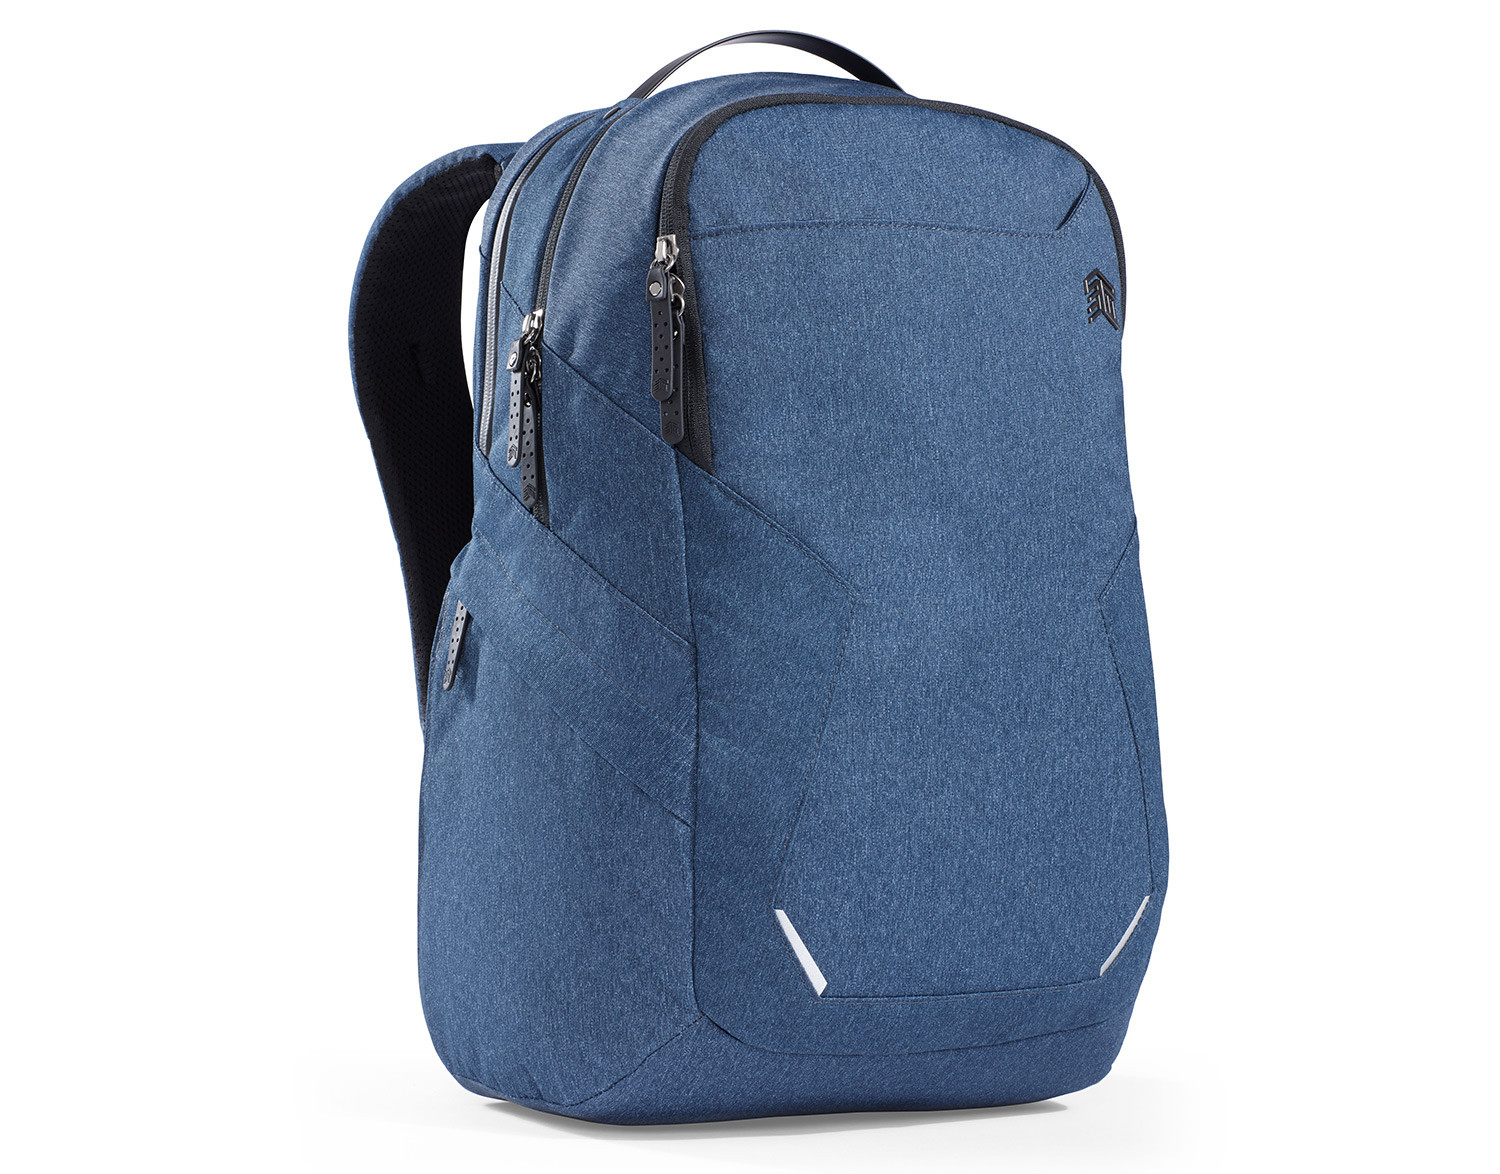 Photos - Laptop Bag STM Myth 38.1 cm  Backpack Black, Blue -117-187P-02 (15")